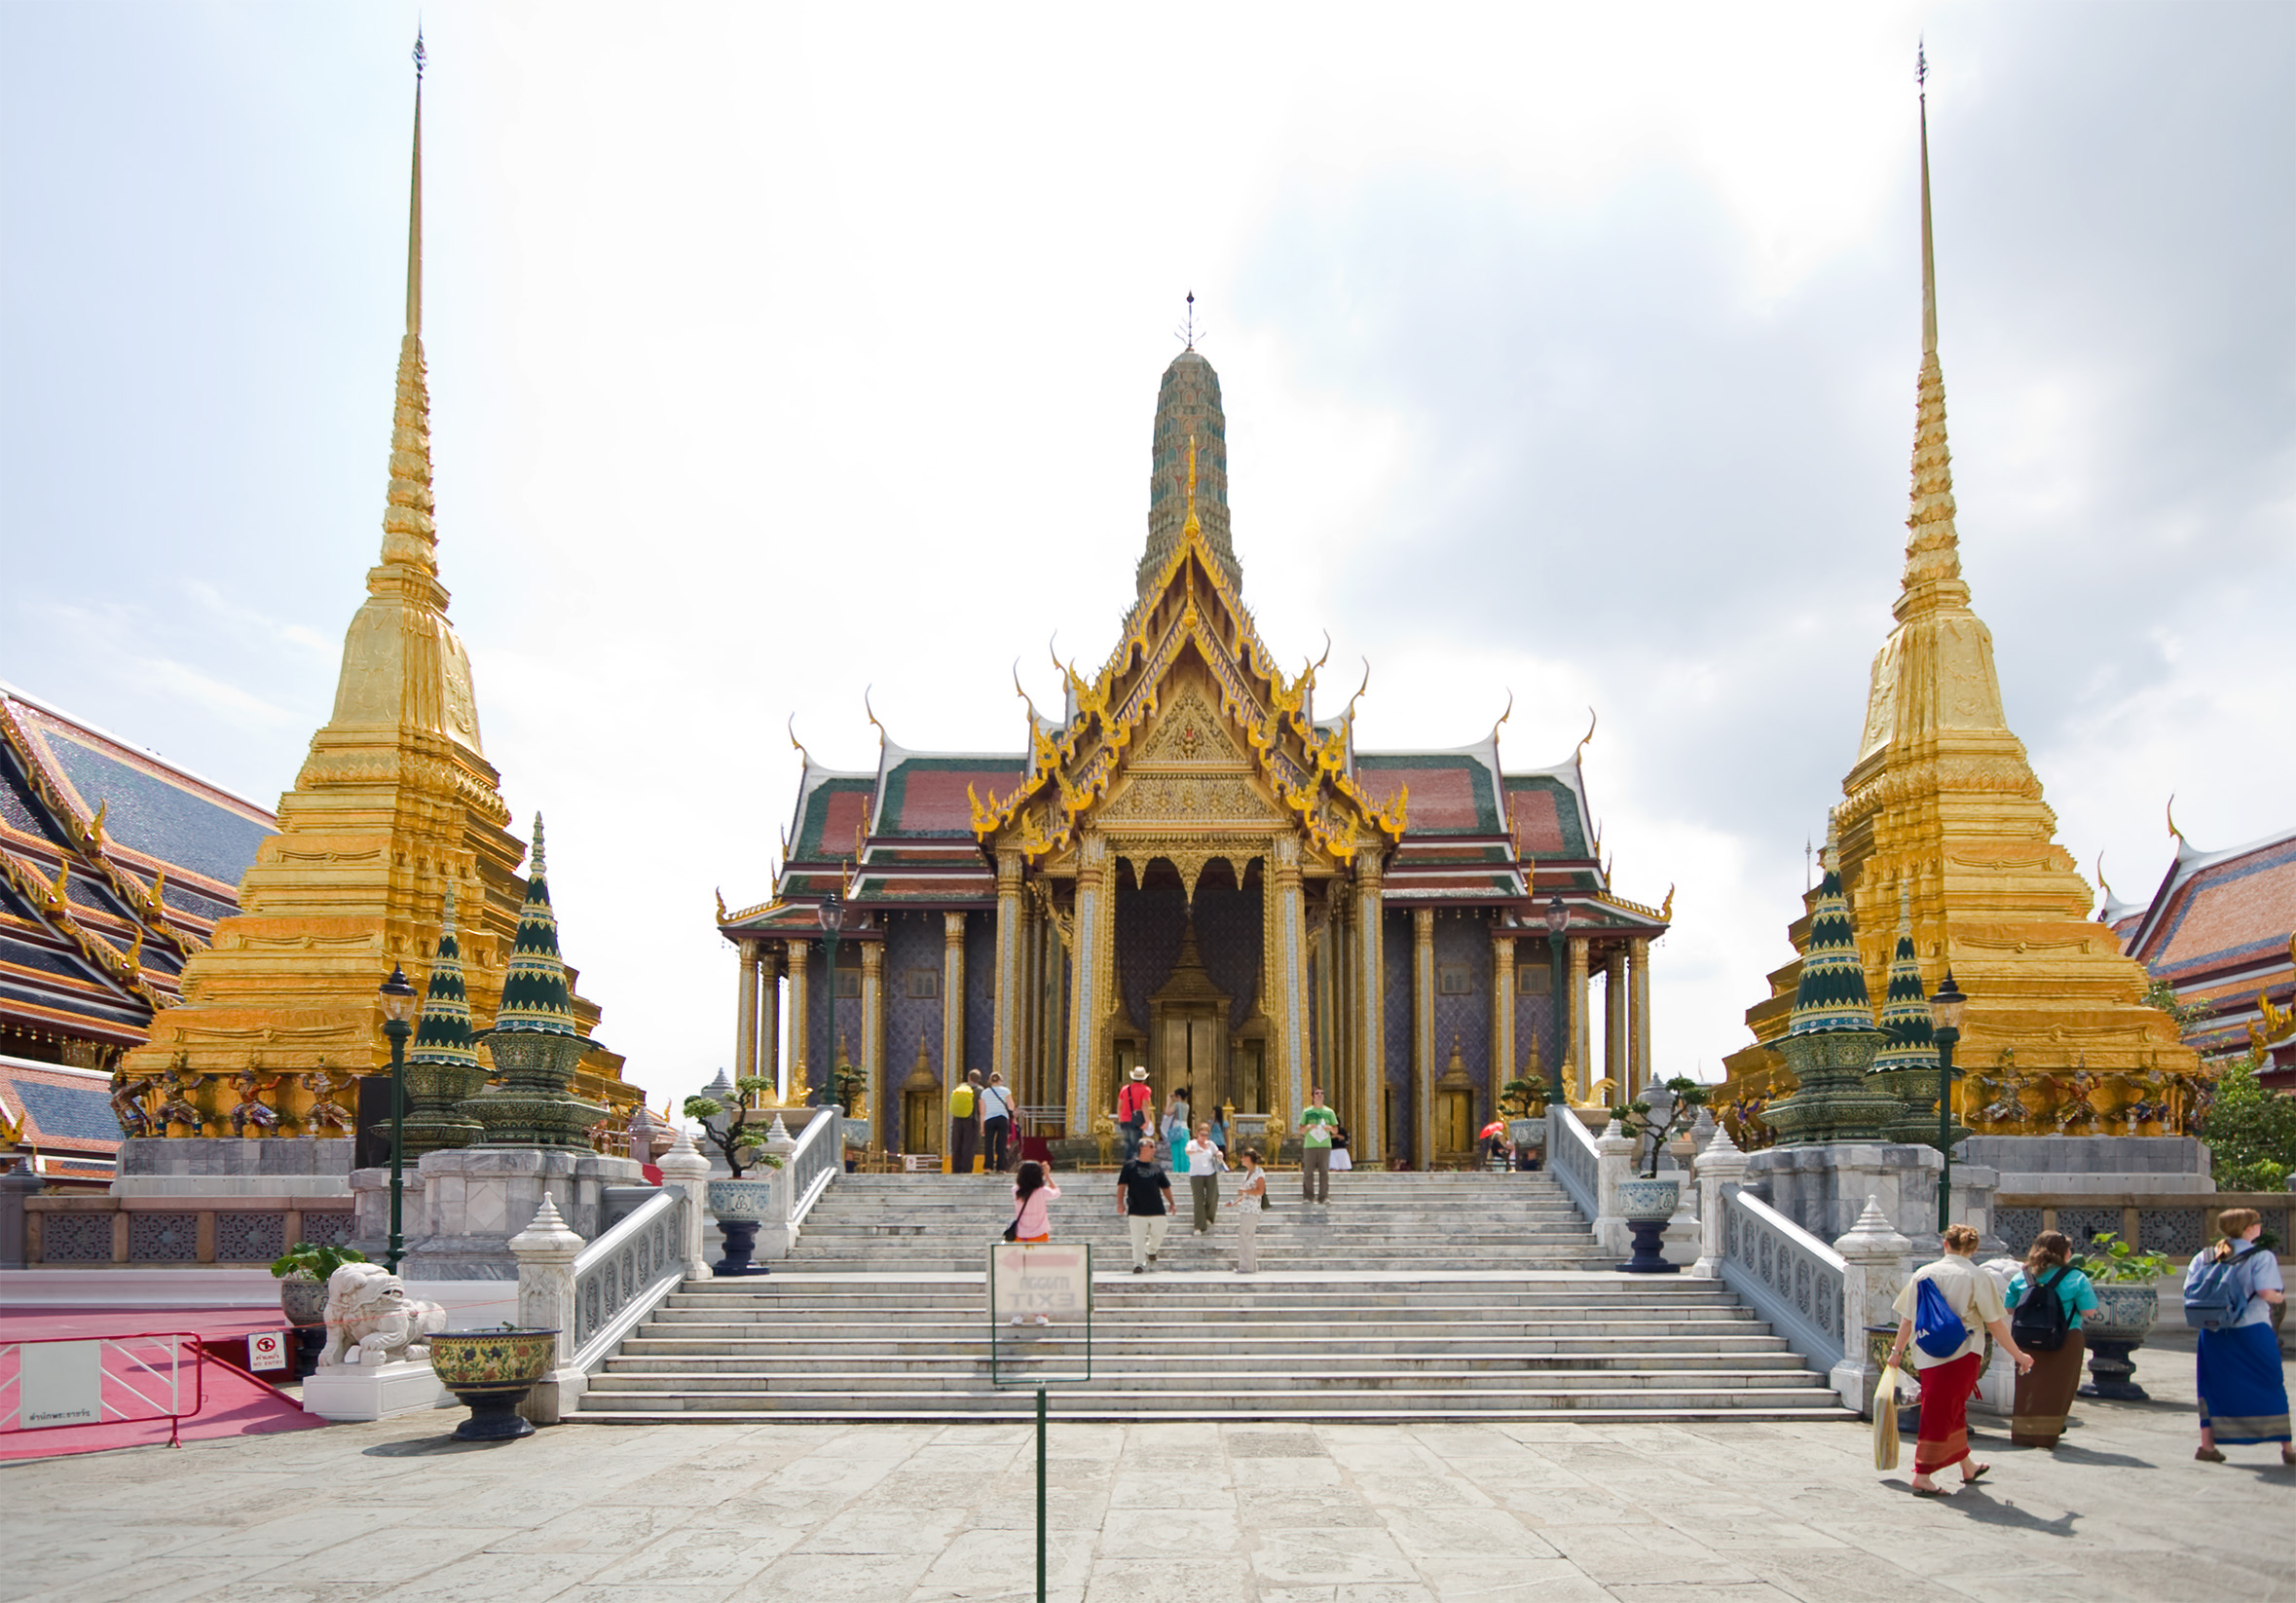 Храм Изумрудного Будды, Бангкок